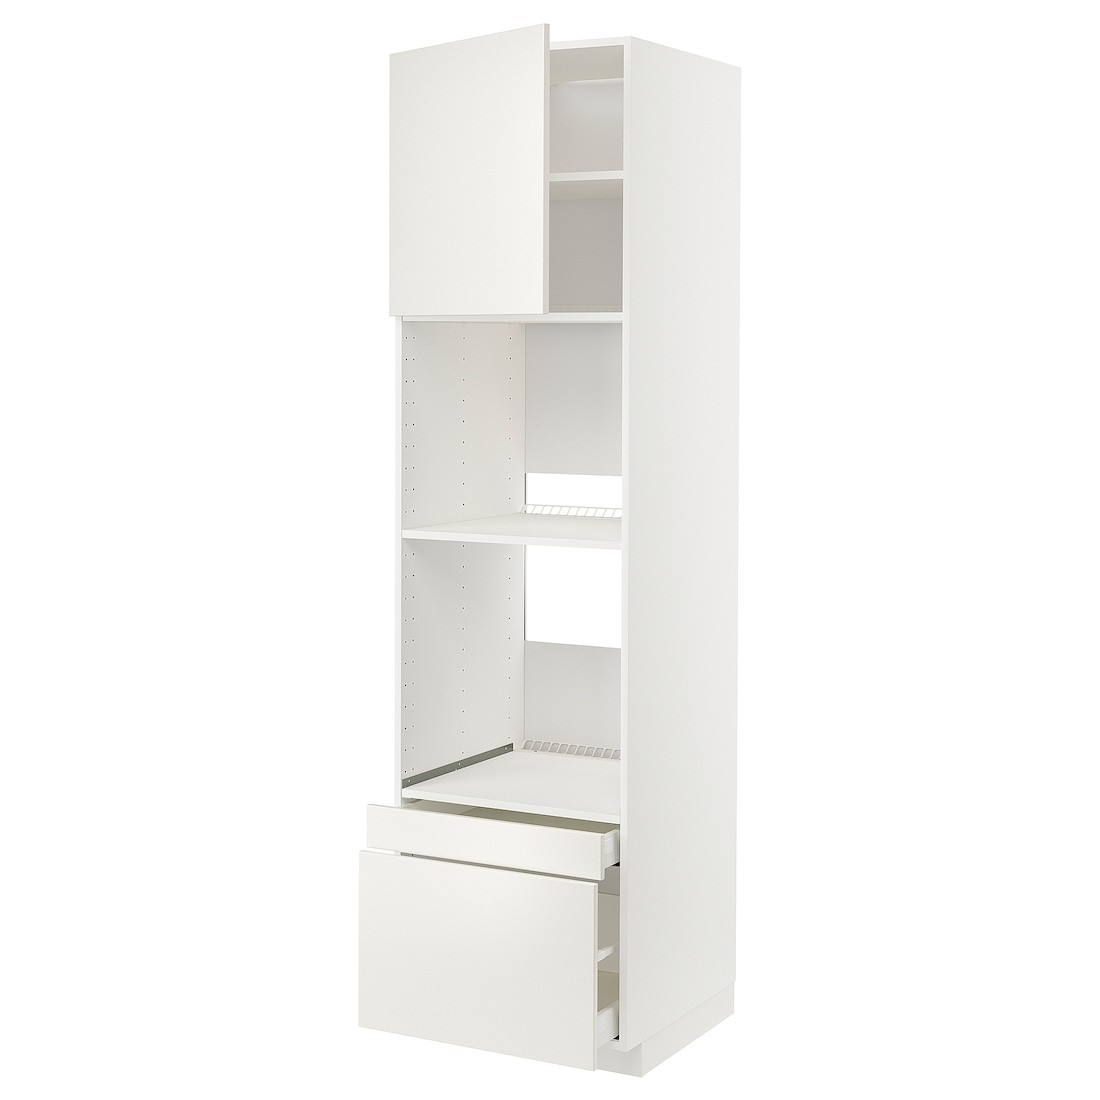 IKEA METOD МЕТОД / MAXIMERA МАКСИМЕРА Высокий шкаф для духовки комби с дверцей / ящиками, белый / Veddinge белый, 60x60x220 см 29468040 | 294.680.40